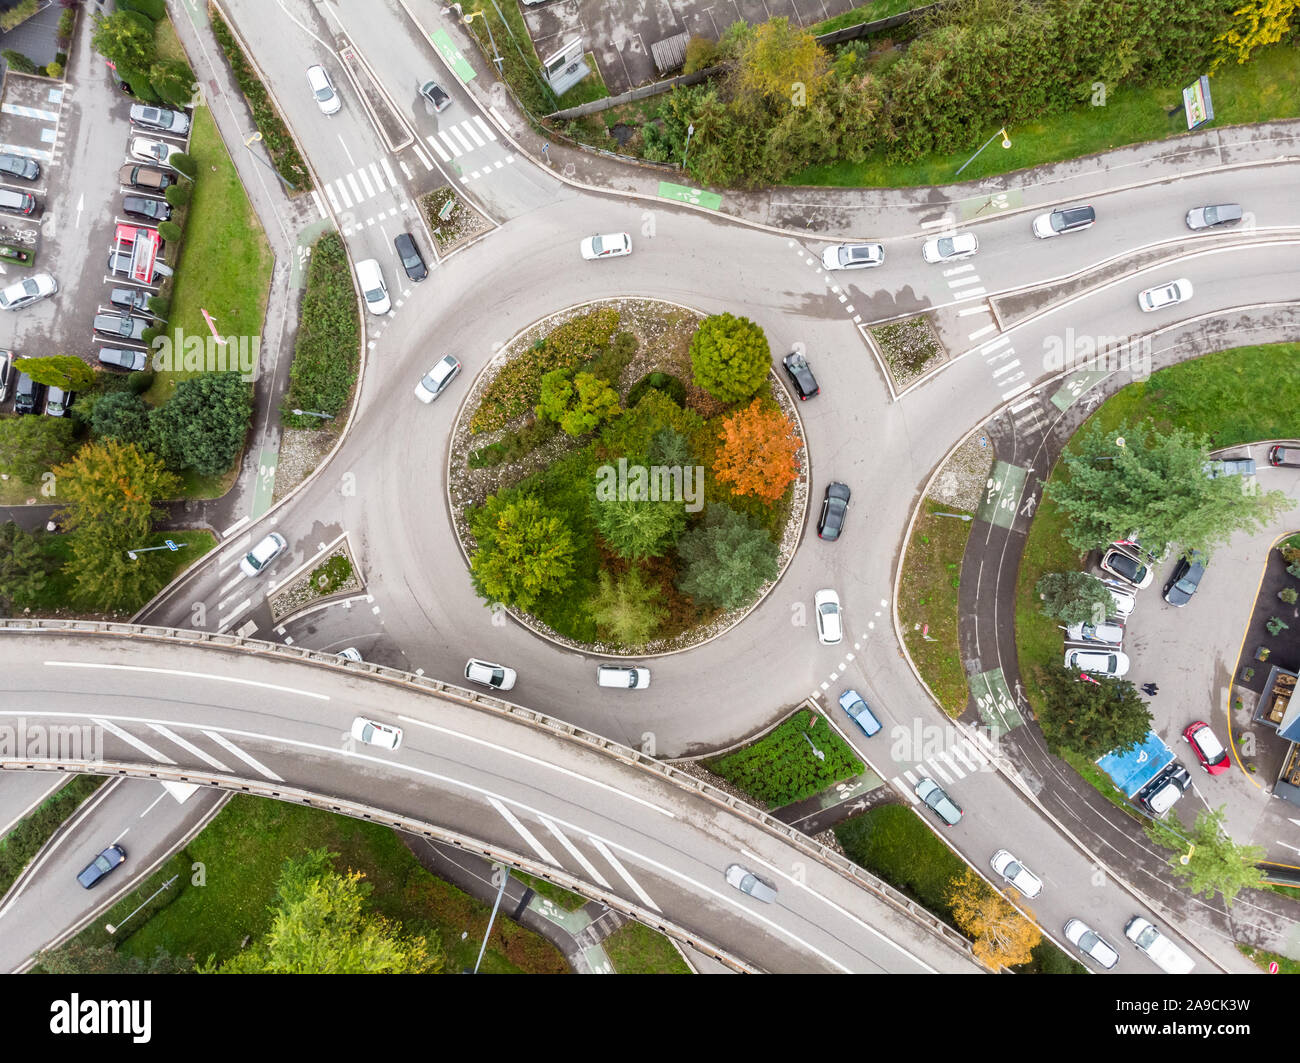 Rotatoria intersezione stradale con traffico di veicoli e verdi alberi vista aerea da fuco che mostra una forma circolare e le corsie, trasporto arco di giunzione Foto Stock